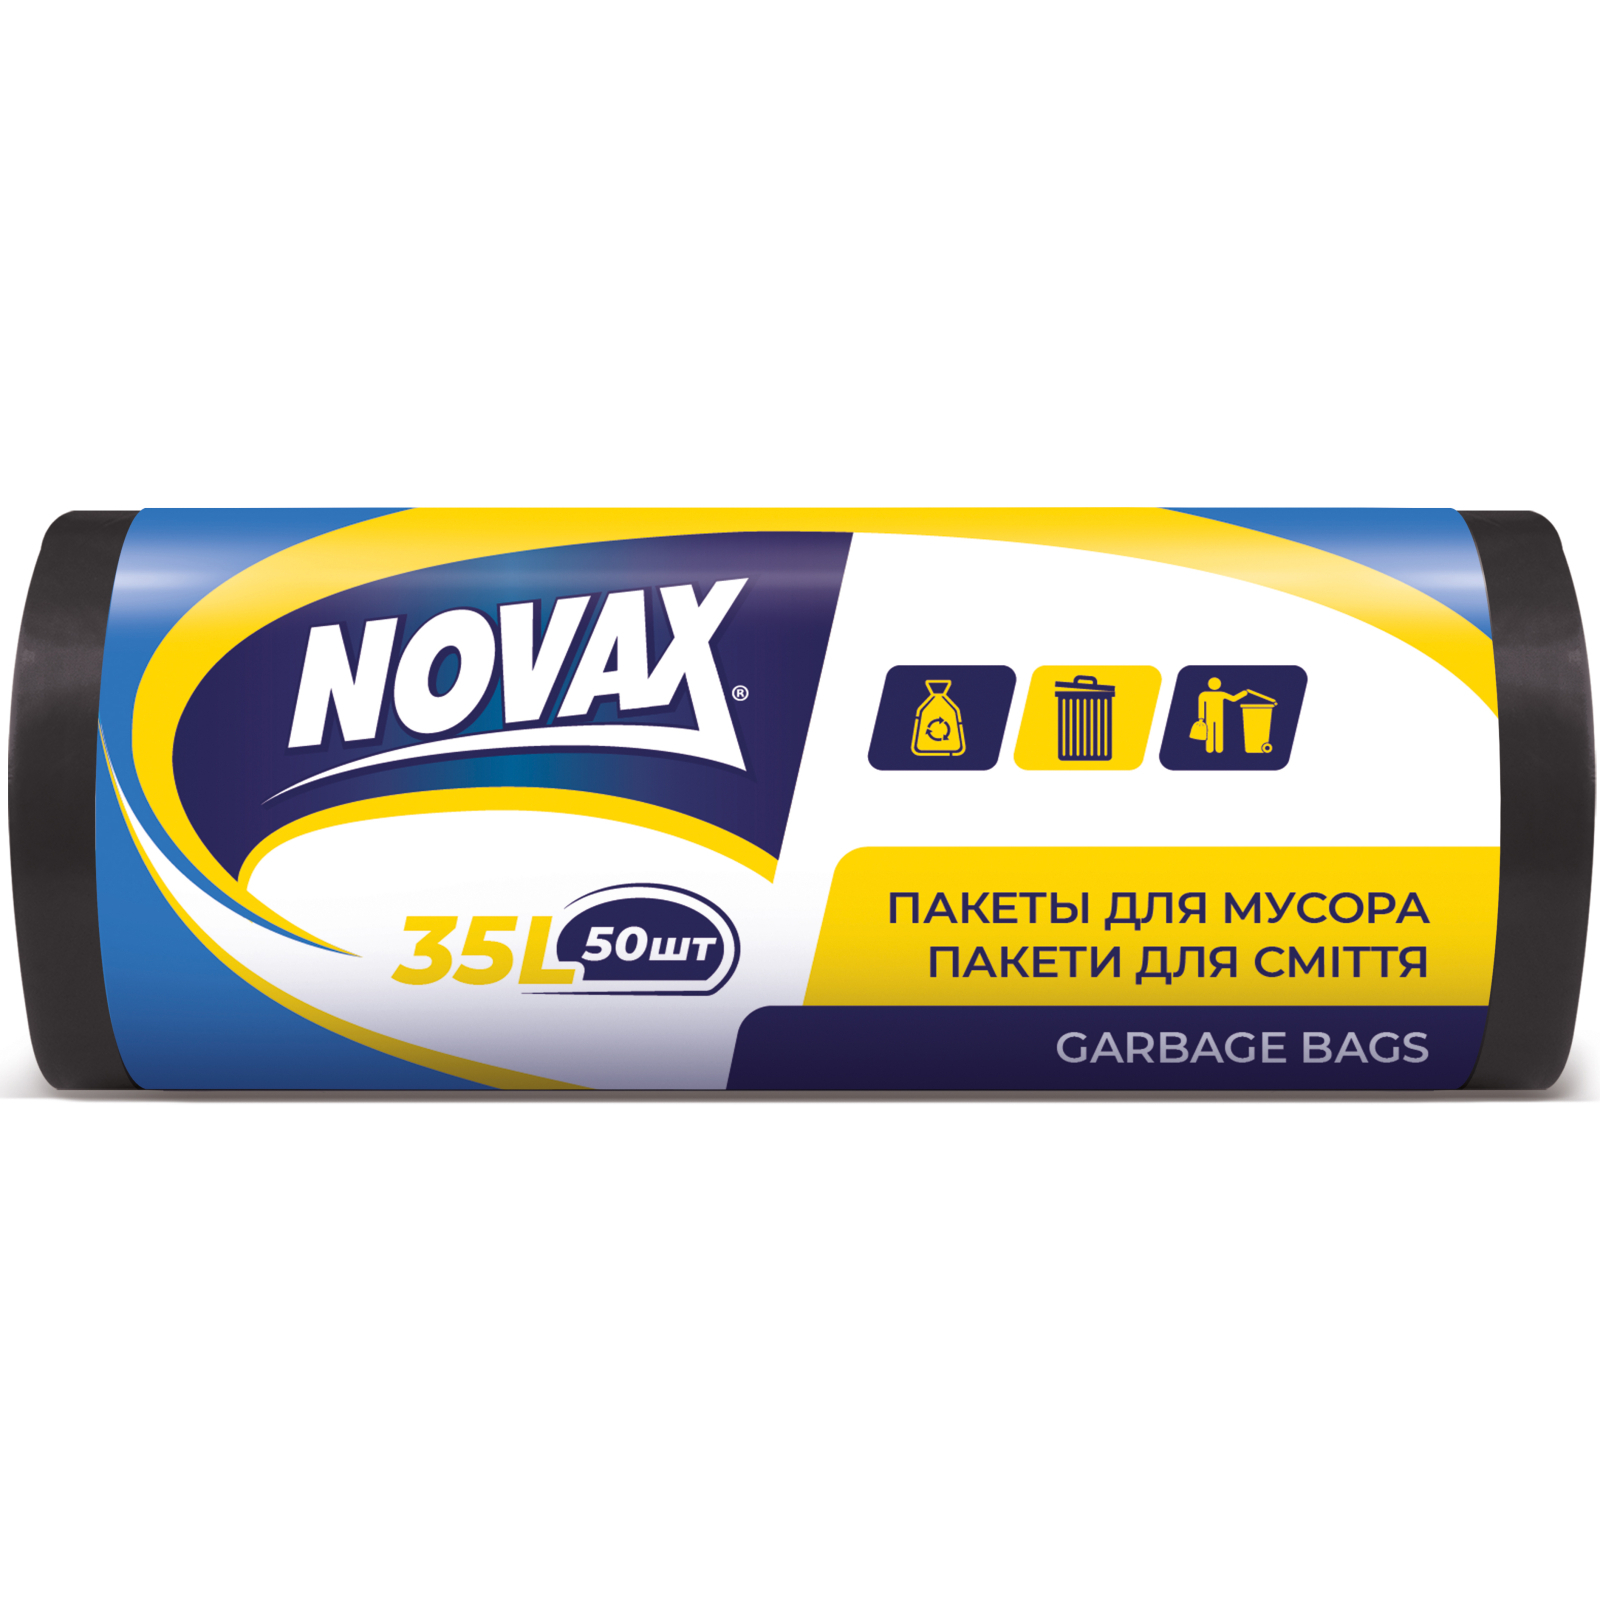 Пакеты для мусора Novax черные 35 л 50 шт. (4823058310466)